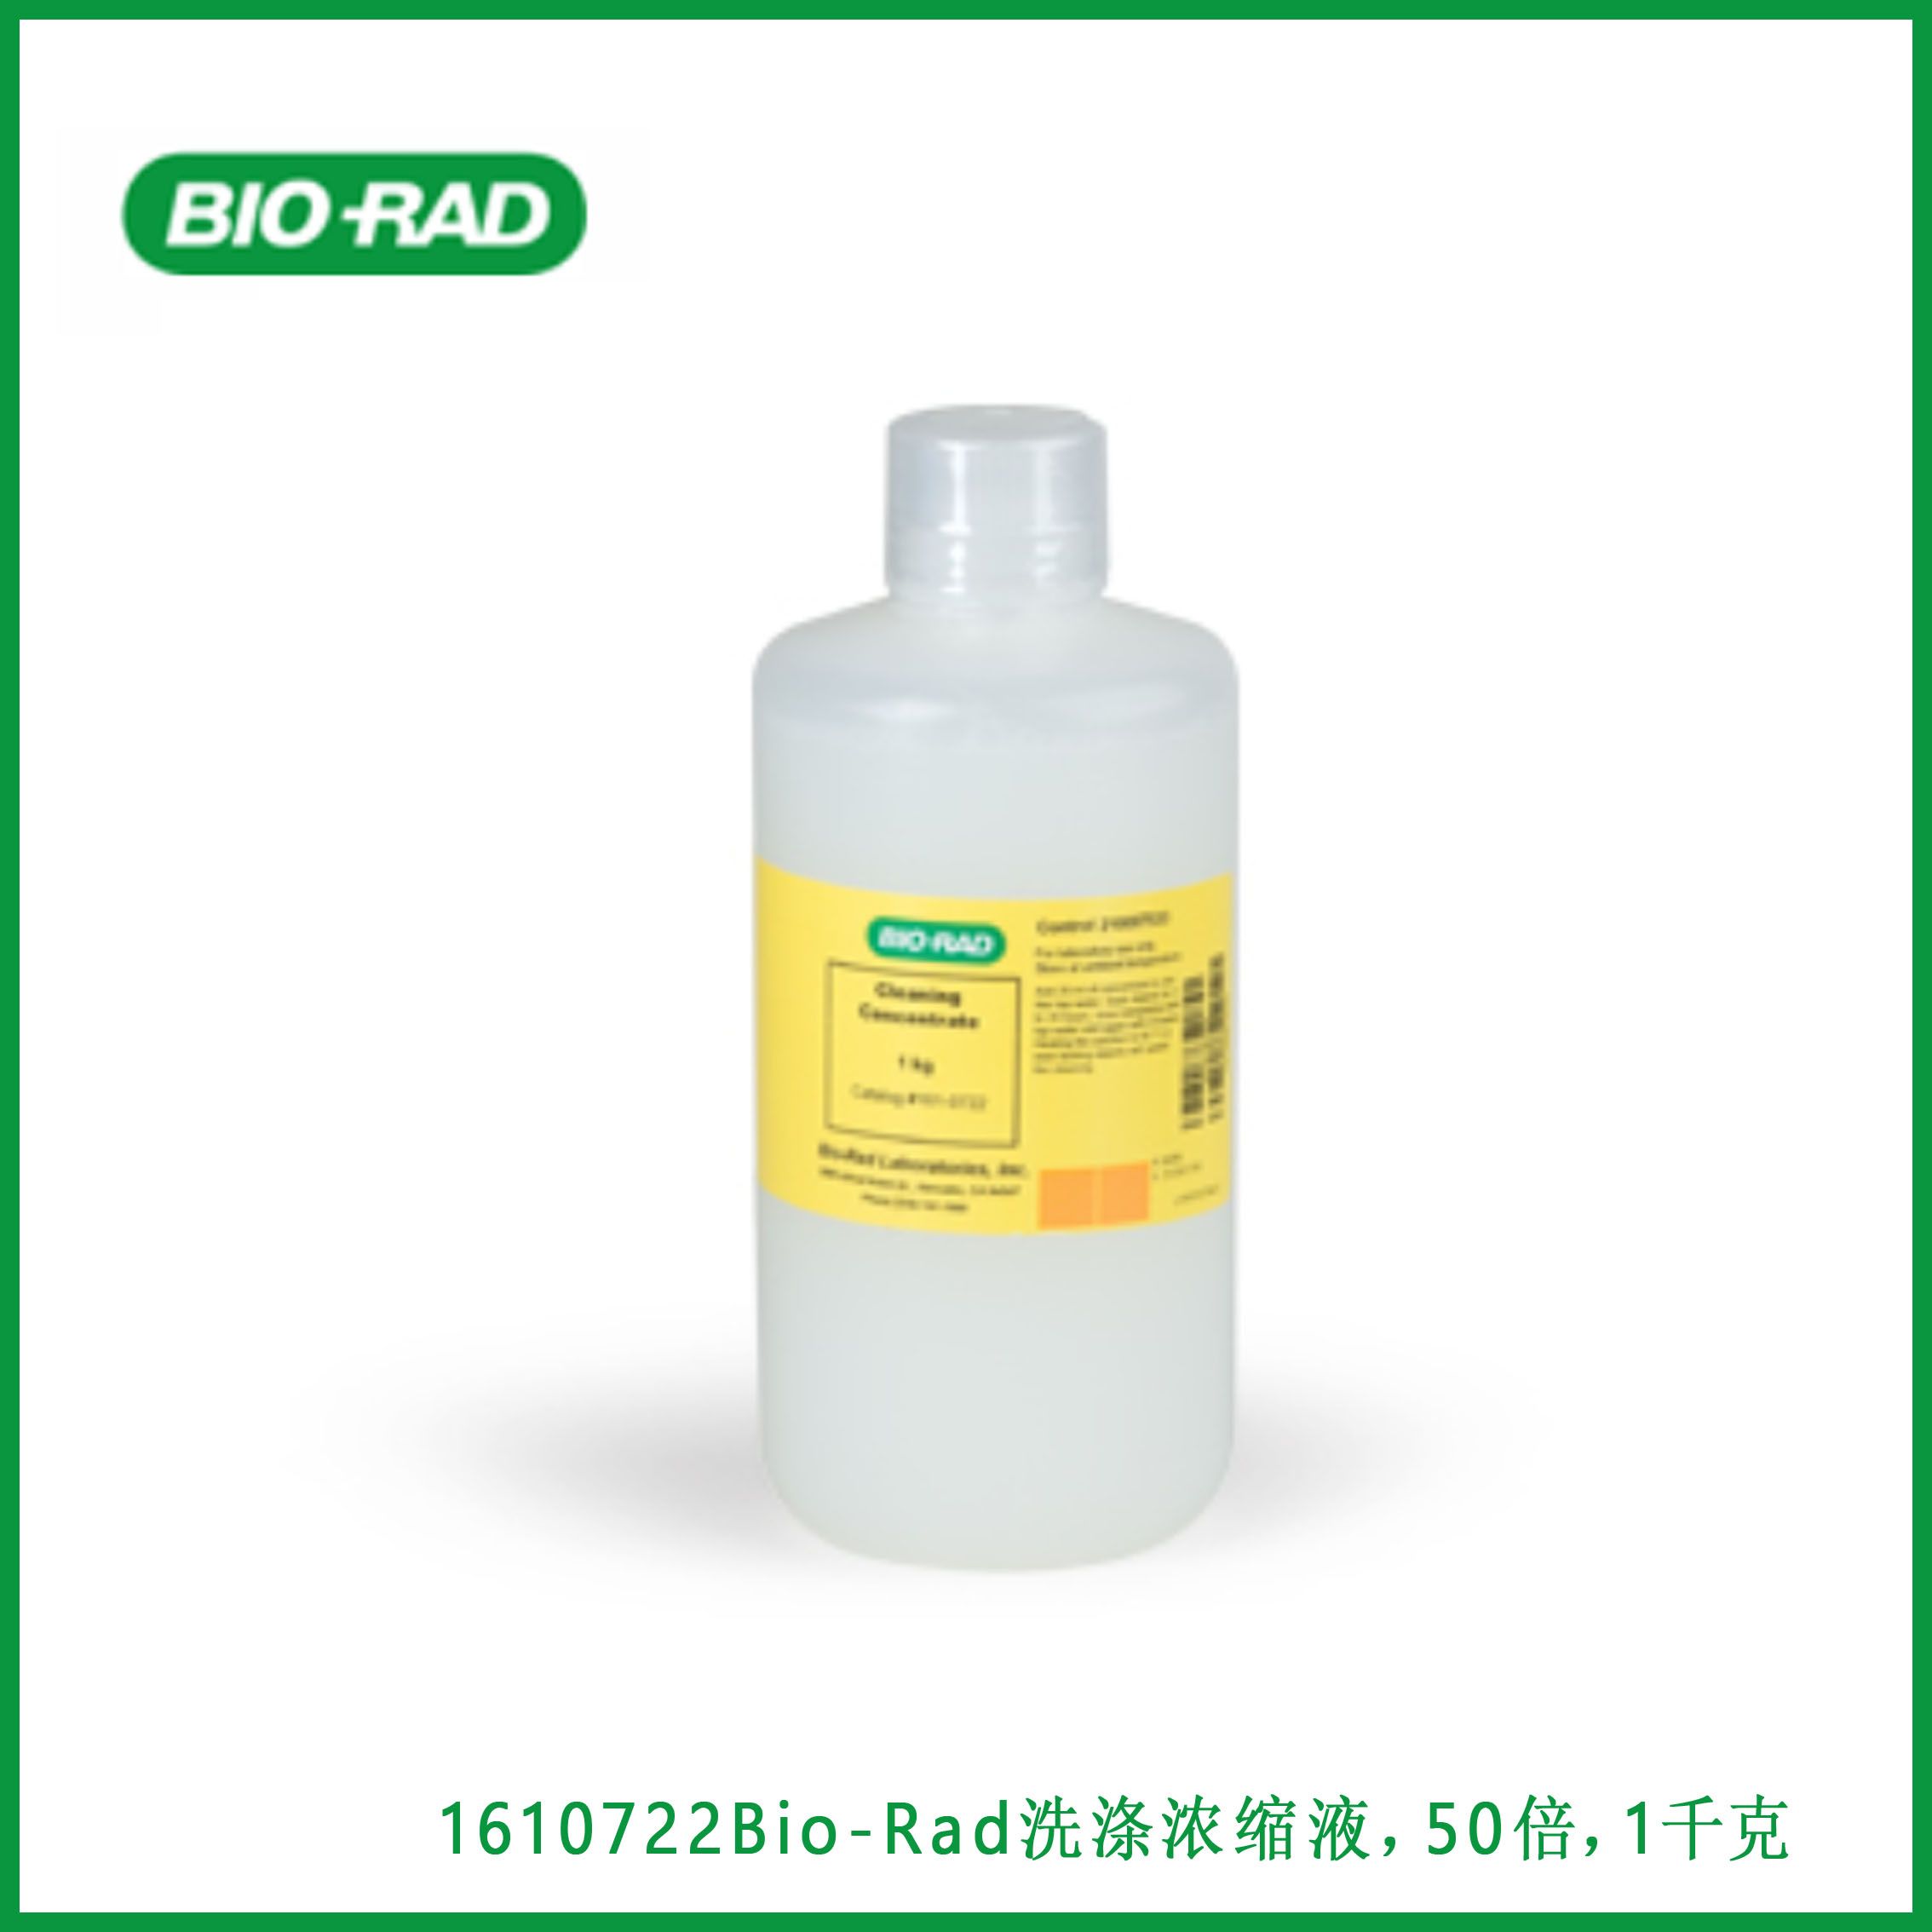 伯乐Bio-Rad1610722Bio-Rad Cleaning Concentrate, 50x，1 kg，Bio-Rad洗涤浓缩液，50倍，1千克，现货